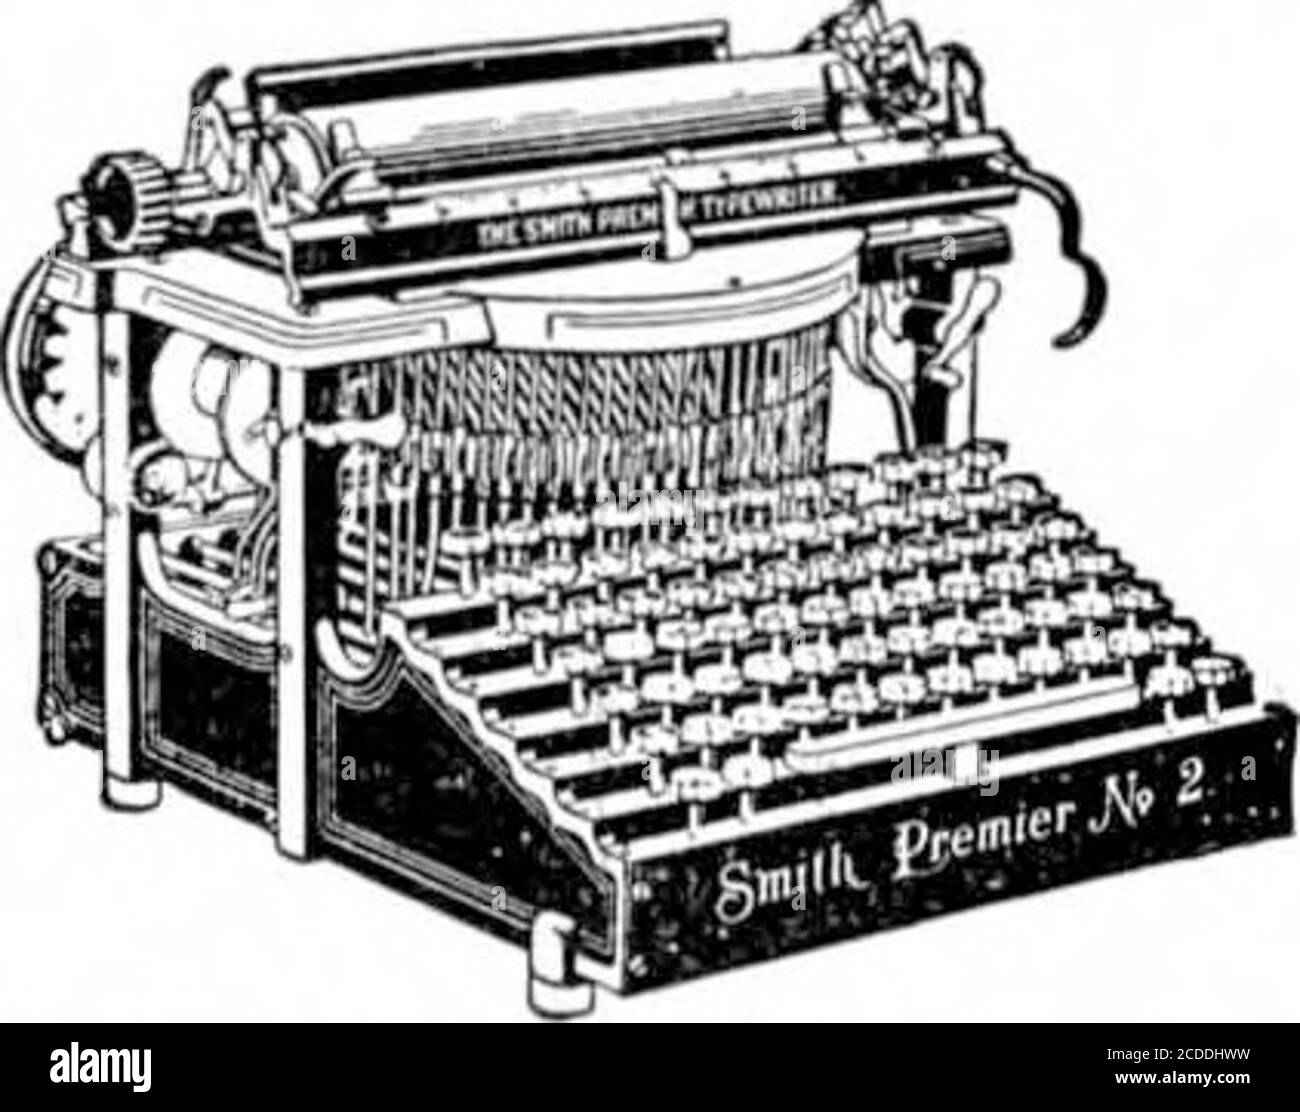 . Scientific American Volume 86 Numéro 14 (avril 1902) . L'honorable ASBURY FRANCIS LEVERtbe, plus jeune membre du Congrès, était ancien] • Secrétaire et machine à écrire pour son prédécesseur de Caroline du Sud amélioration de l'ordre de l'âge le plus élevé possibilités de machines à écrire disponibles seulement aux utilisateurs de la Sucgreatcess, la Smith PremierTypwriter. American Success Series en forme de livre à la fin de cette année, la Smith Premier Type-Writer Company publiera un beau livre contenant des images et de brèves biographies d'Américains douzivesuccessful qui ont profité de leur utilisation de l'ofsténographie ou de dactylographie. TH Banque D'Images